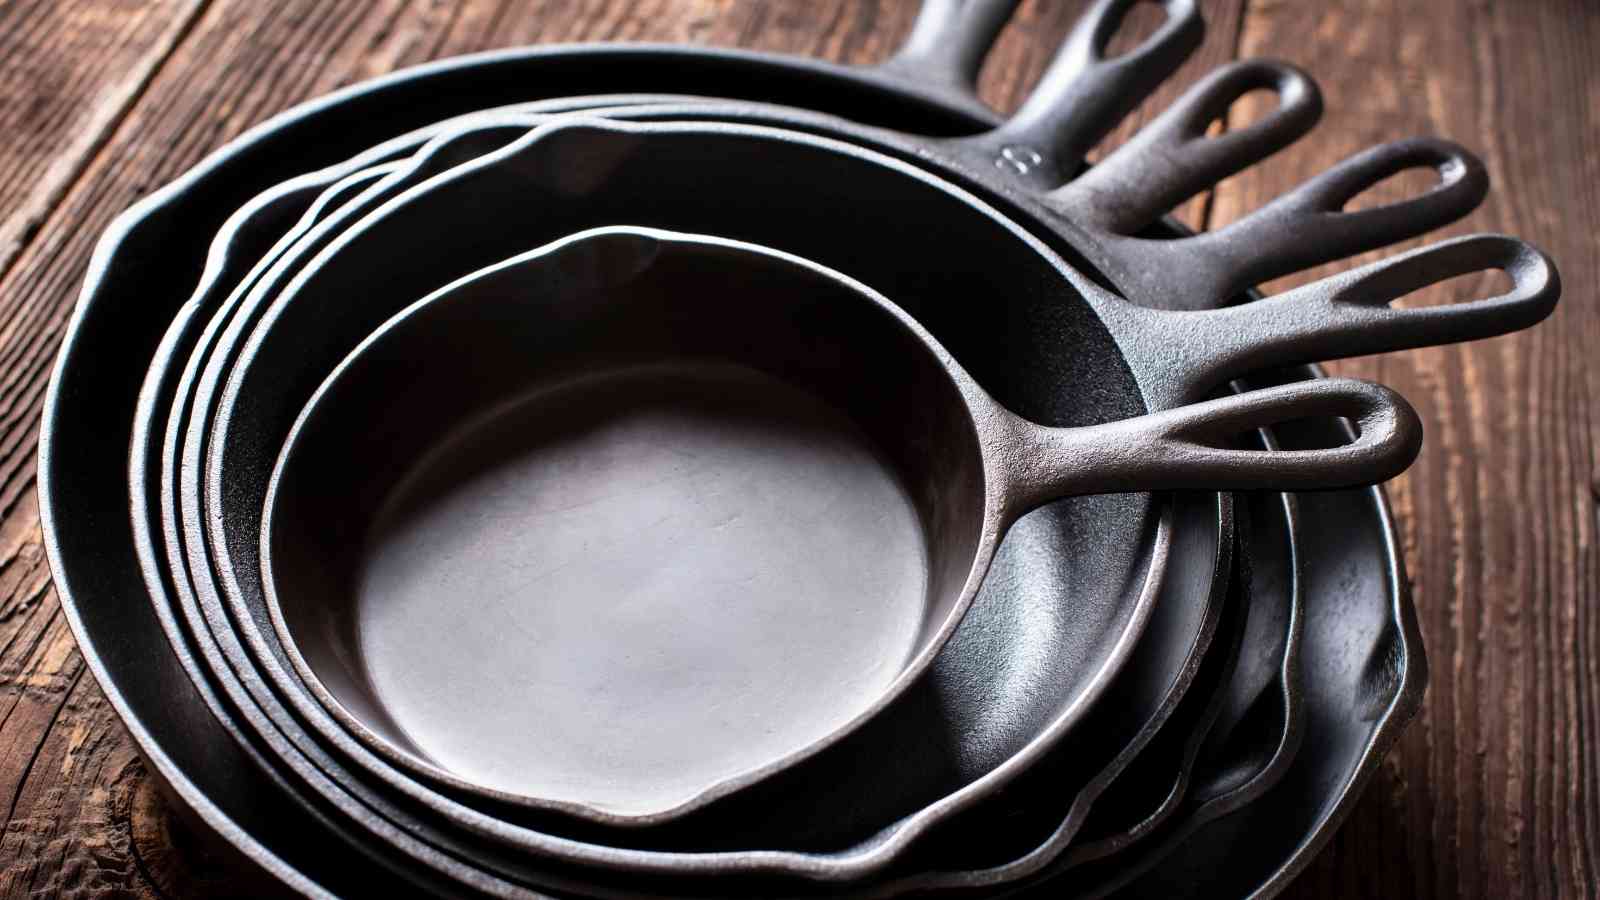 Replacing Your Cast Iron Pan